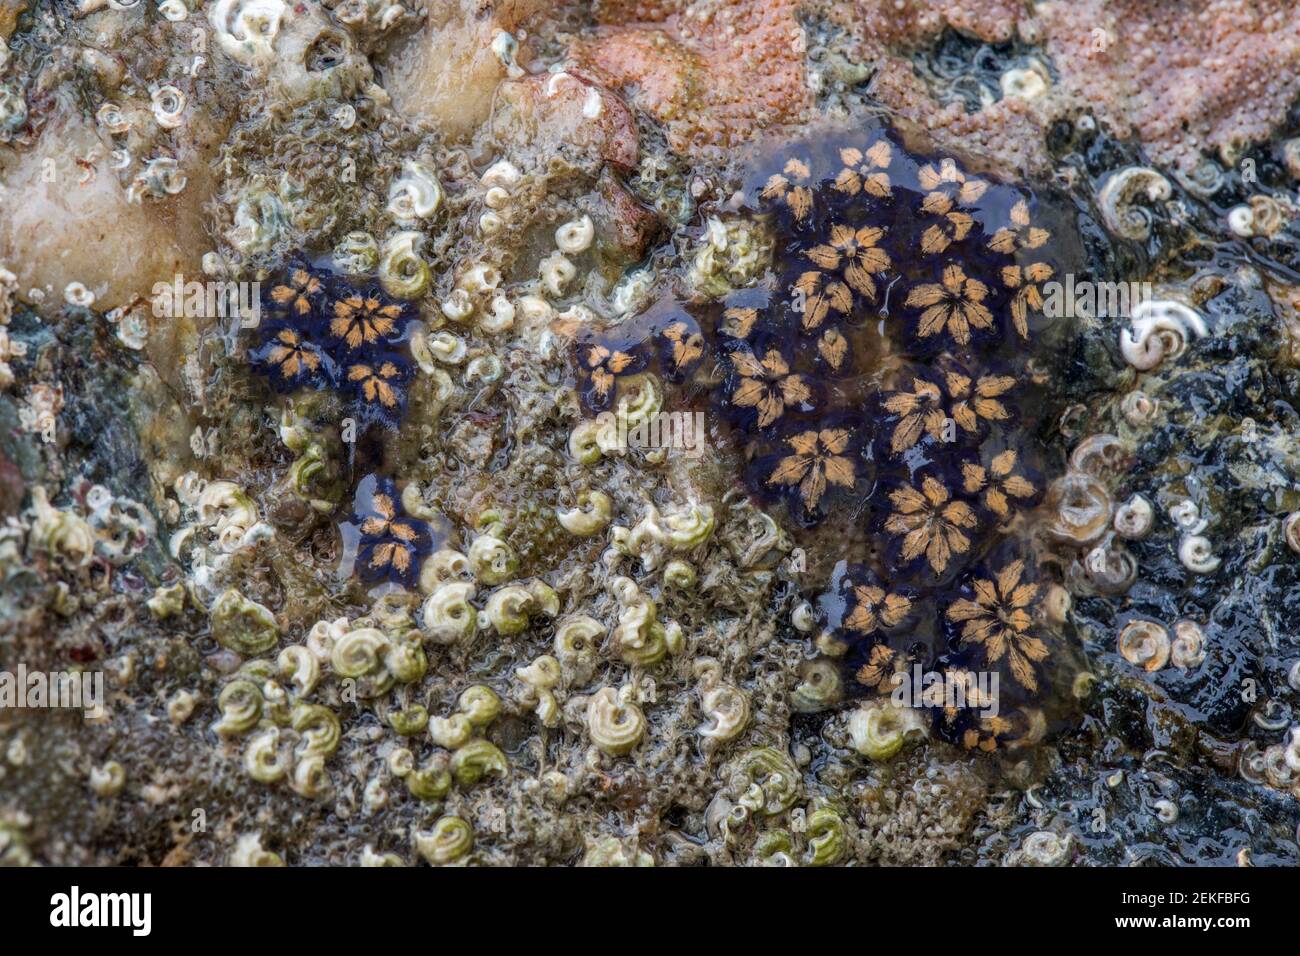 Star Ascidian; Botryllus schlosseri; UK Stock Photo